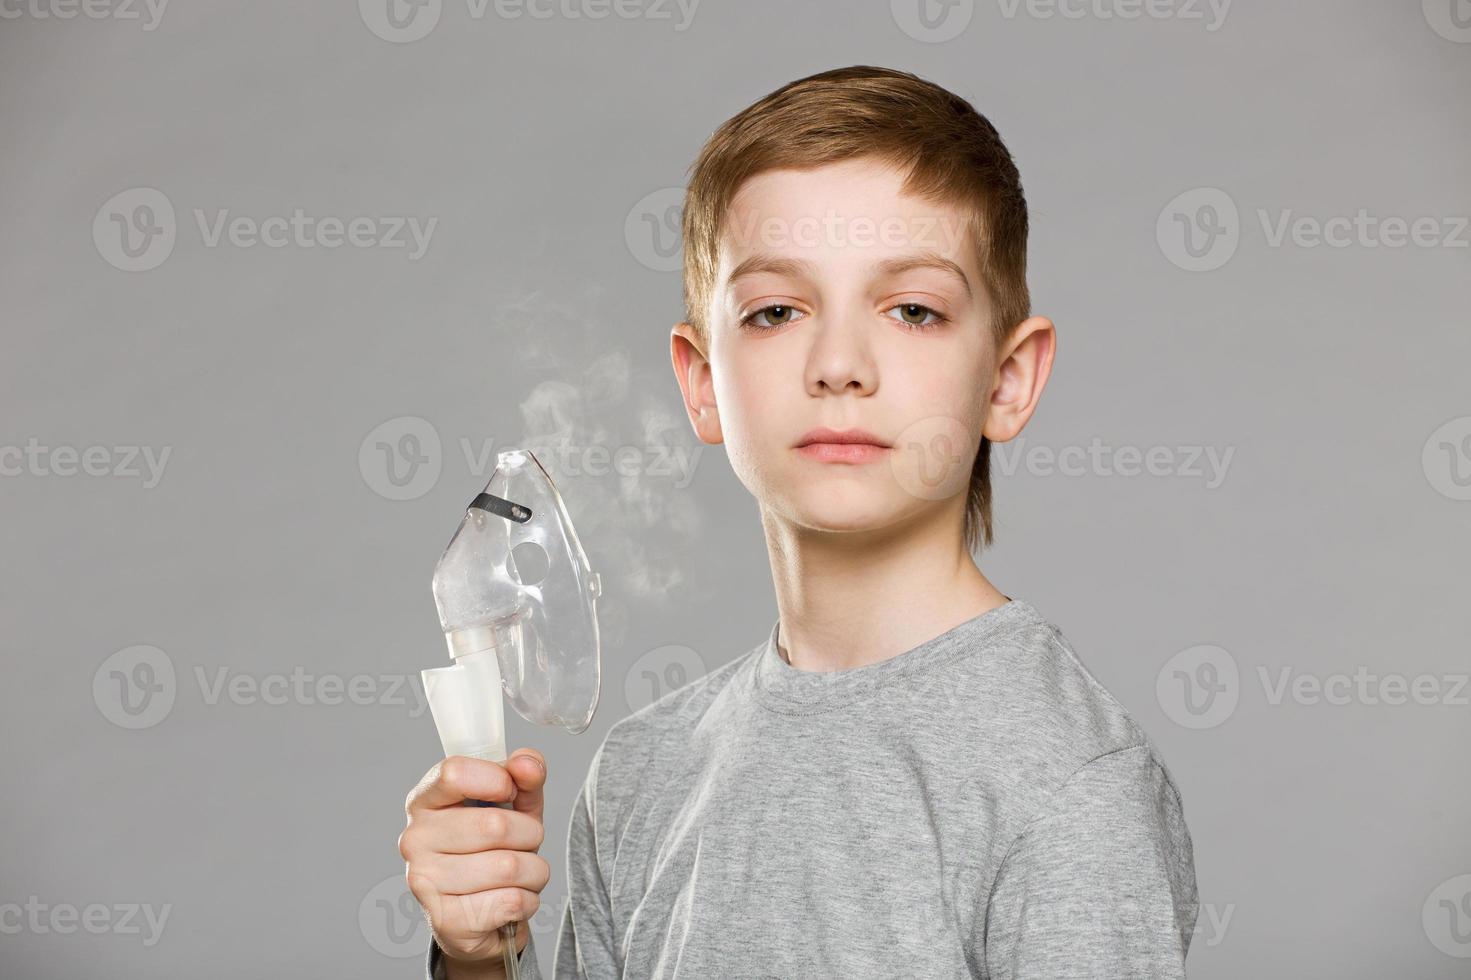 menino infeliz segurando a máscara de inalação, liberando fumaça no fundo cinza foto